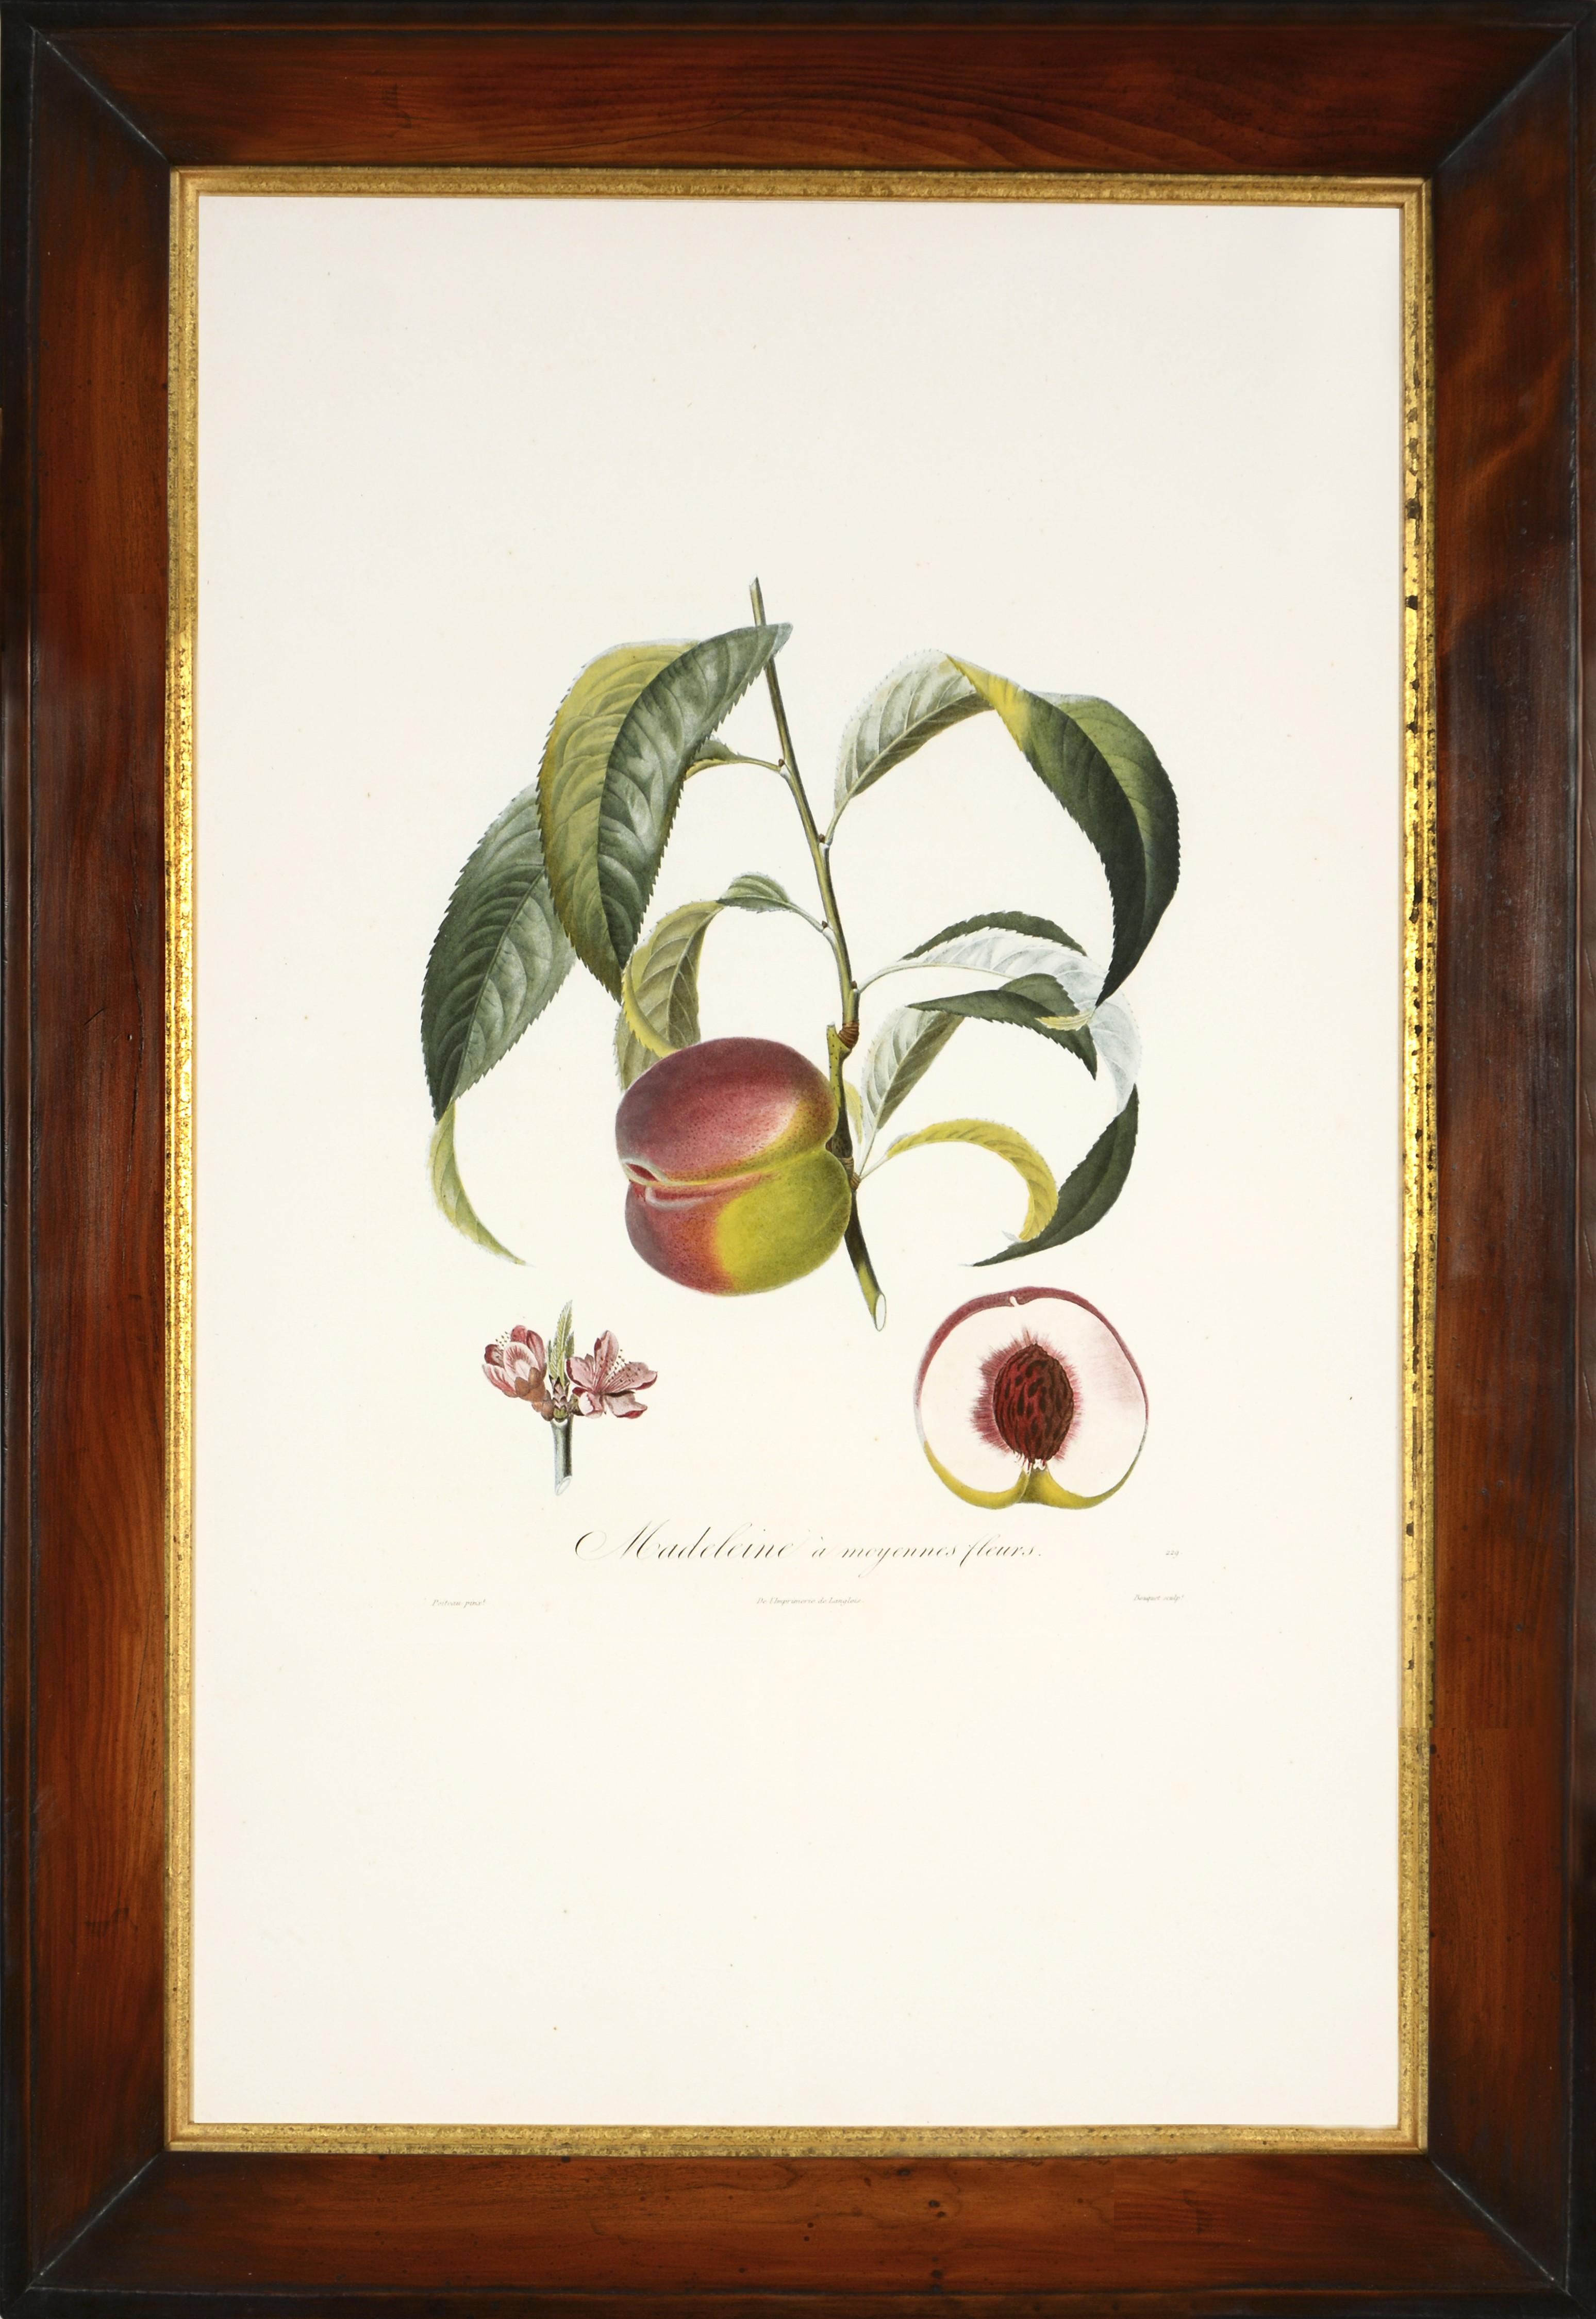 POITEAU/TURPIN. Traité des arbres fruitiers: A Set of Four Peaches